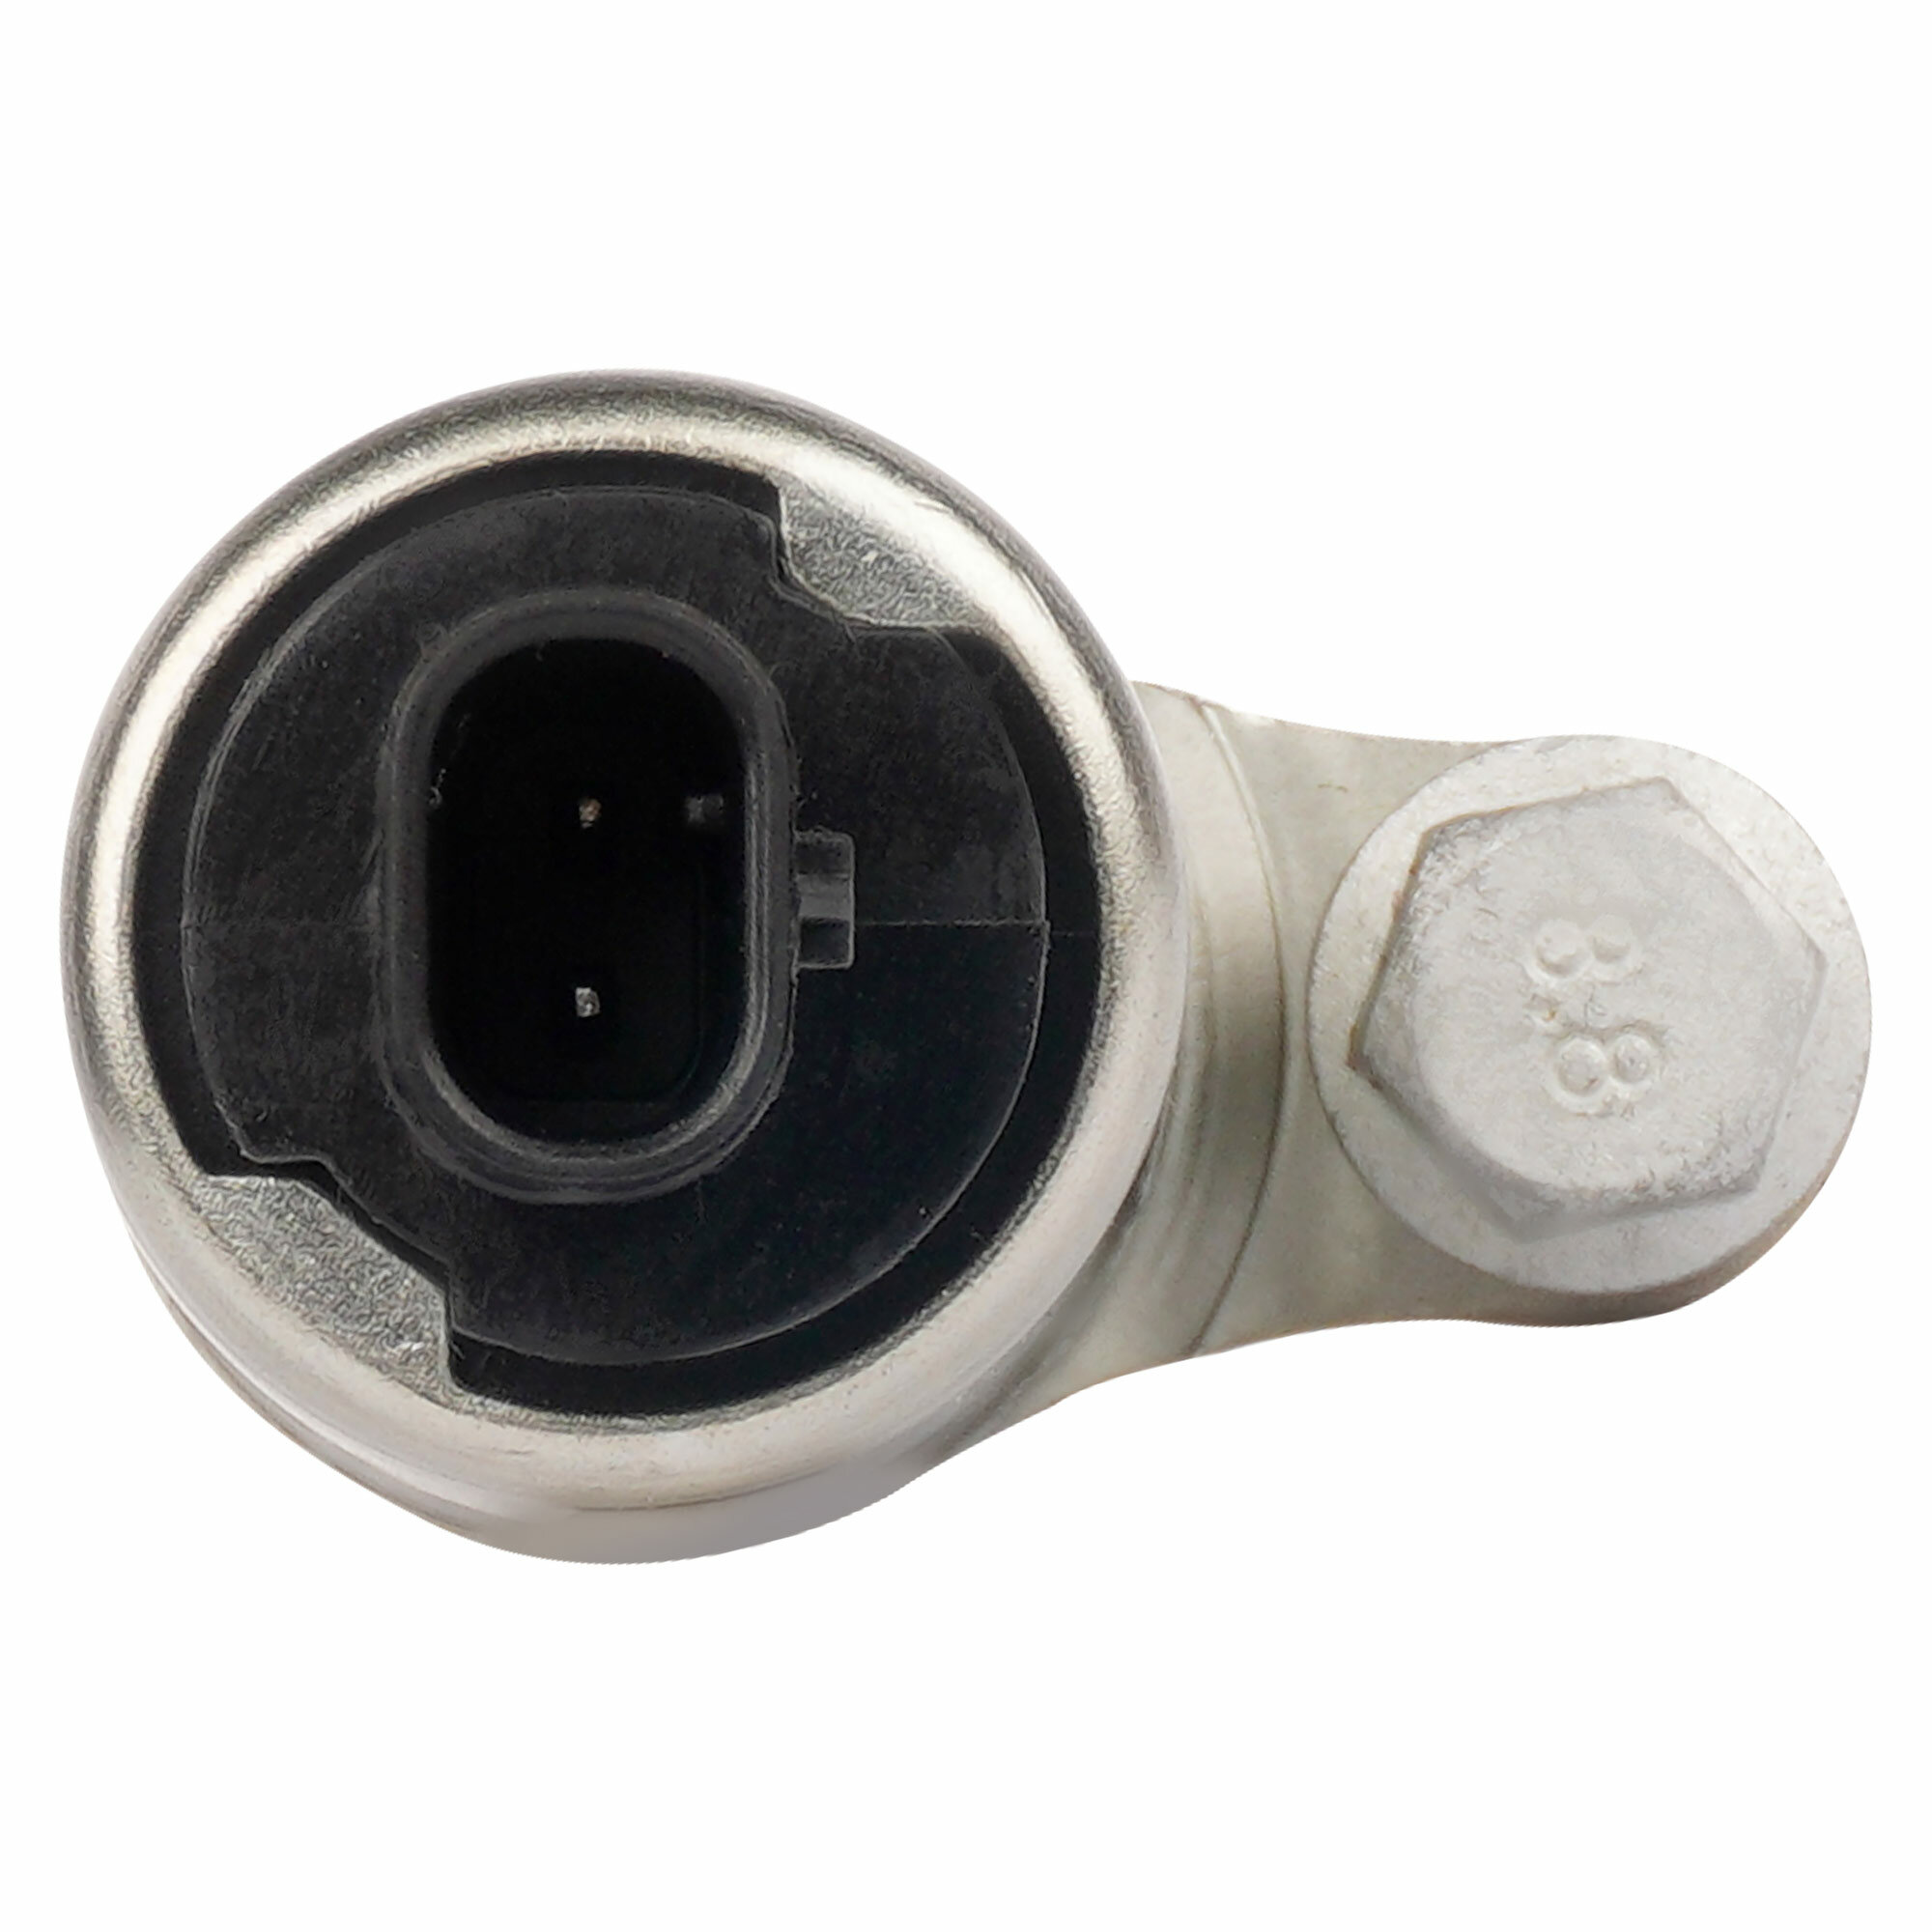 Клапан электромагнитный регулировки фаз ГРМ для автомобилей Opel Insignia (08-) 2.0T выпускной SVC 0504 StartVolt